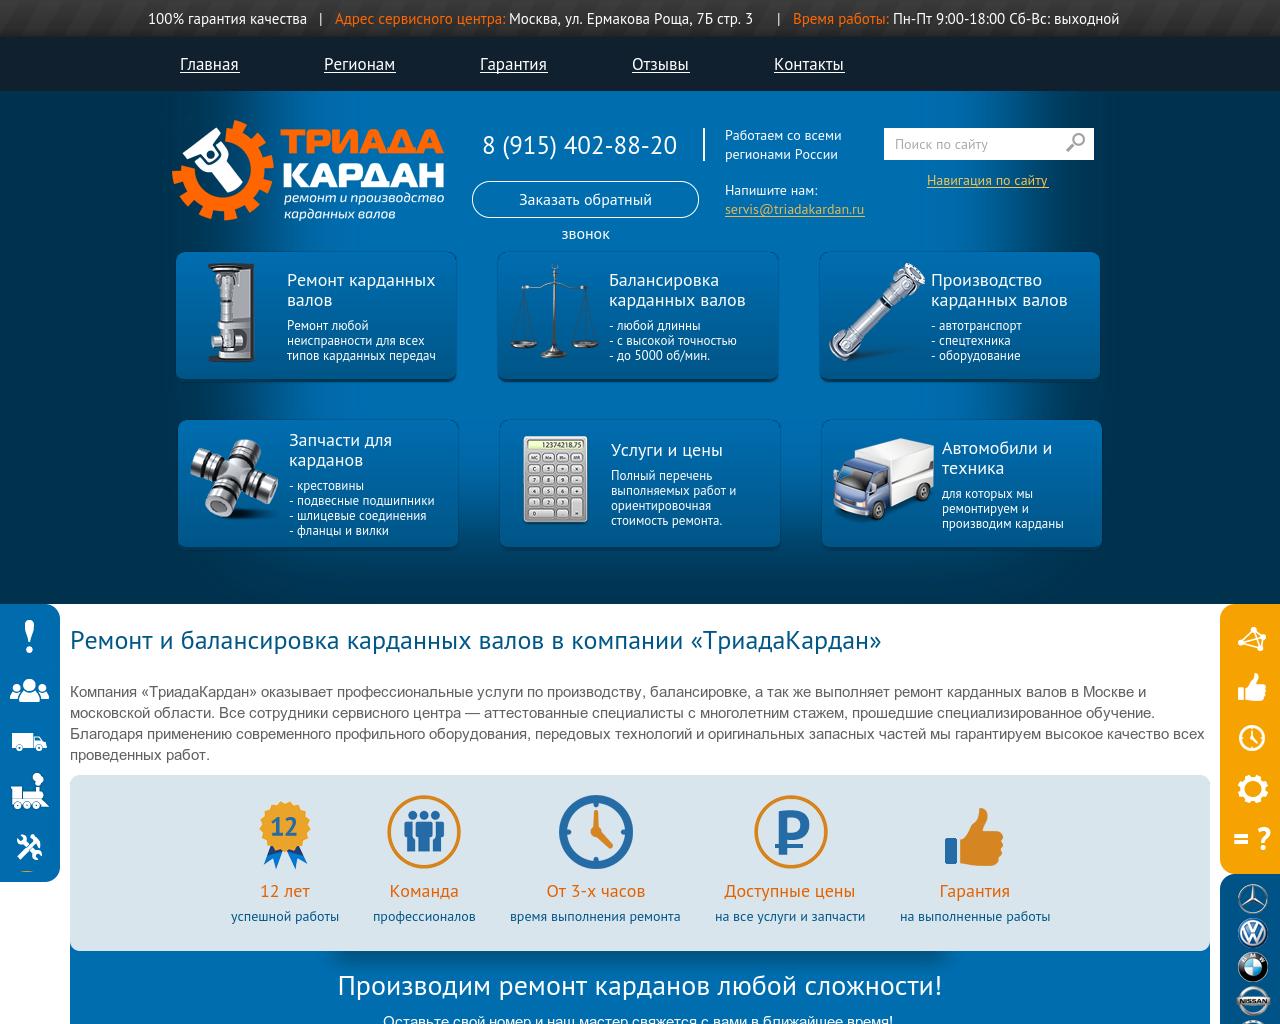 Изображение сайта triadakardan.ru в разрешении 1280x1024